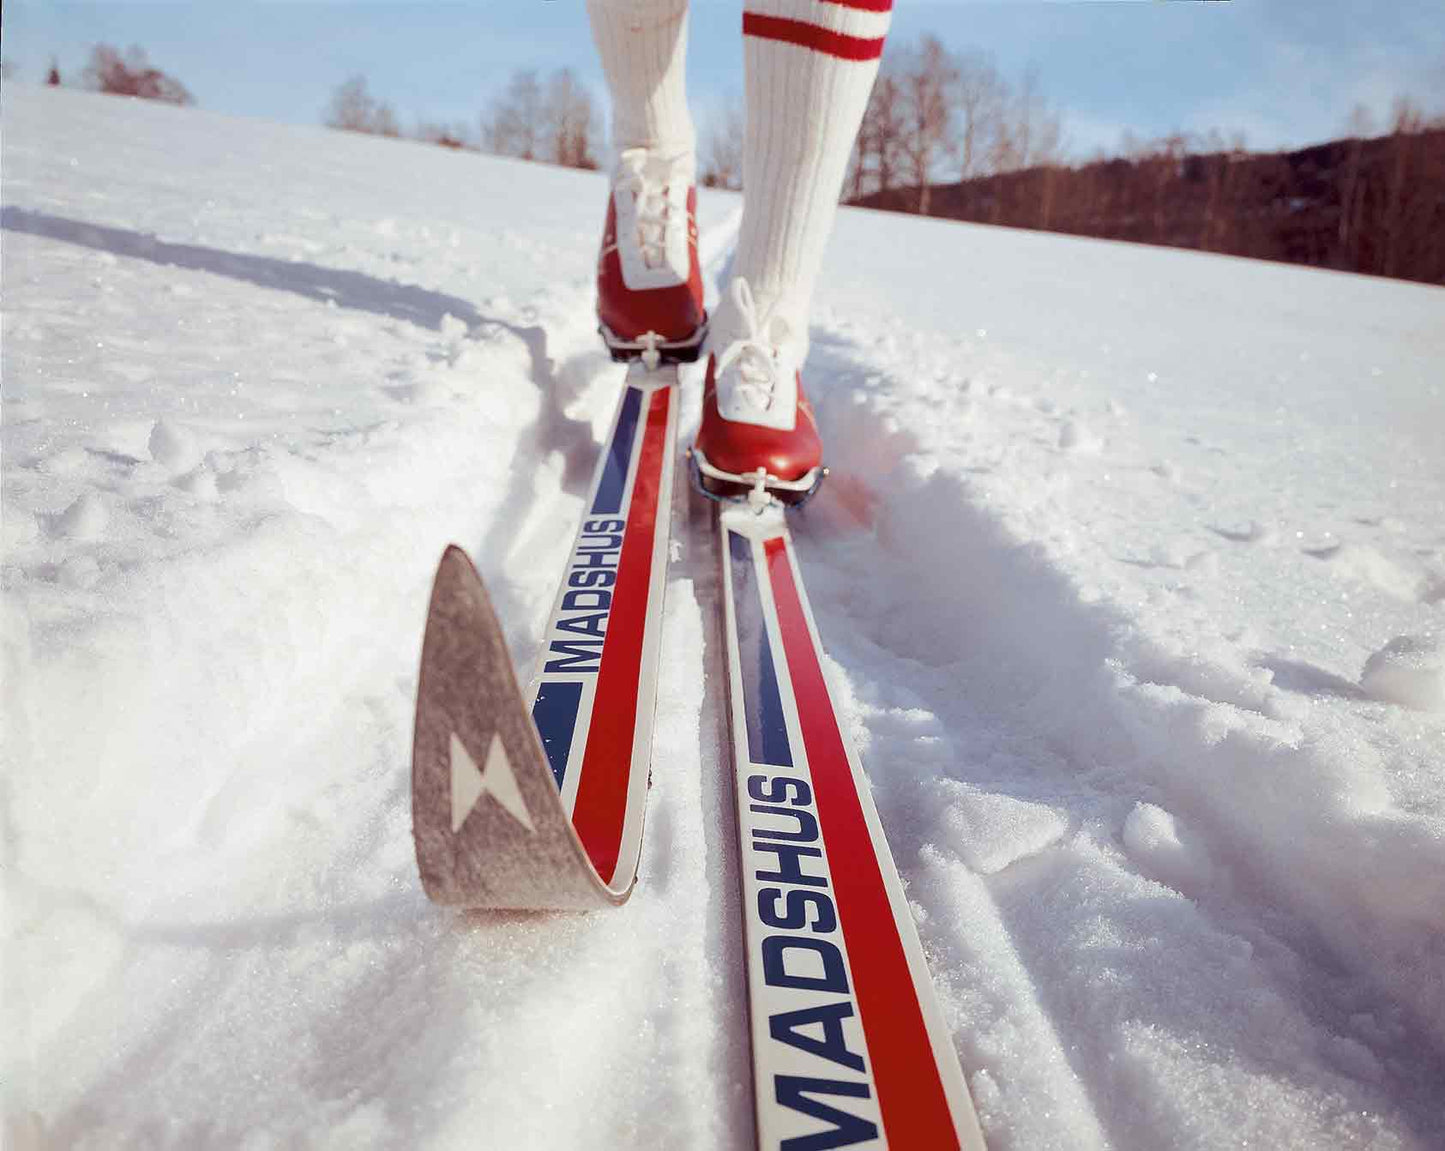 Ski : Mise au point de ski de fond classique | Tuning Ski de fond Classique